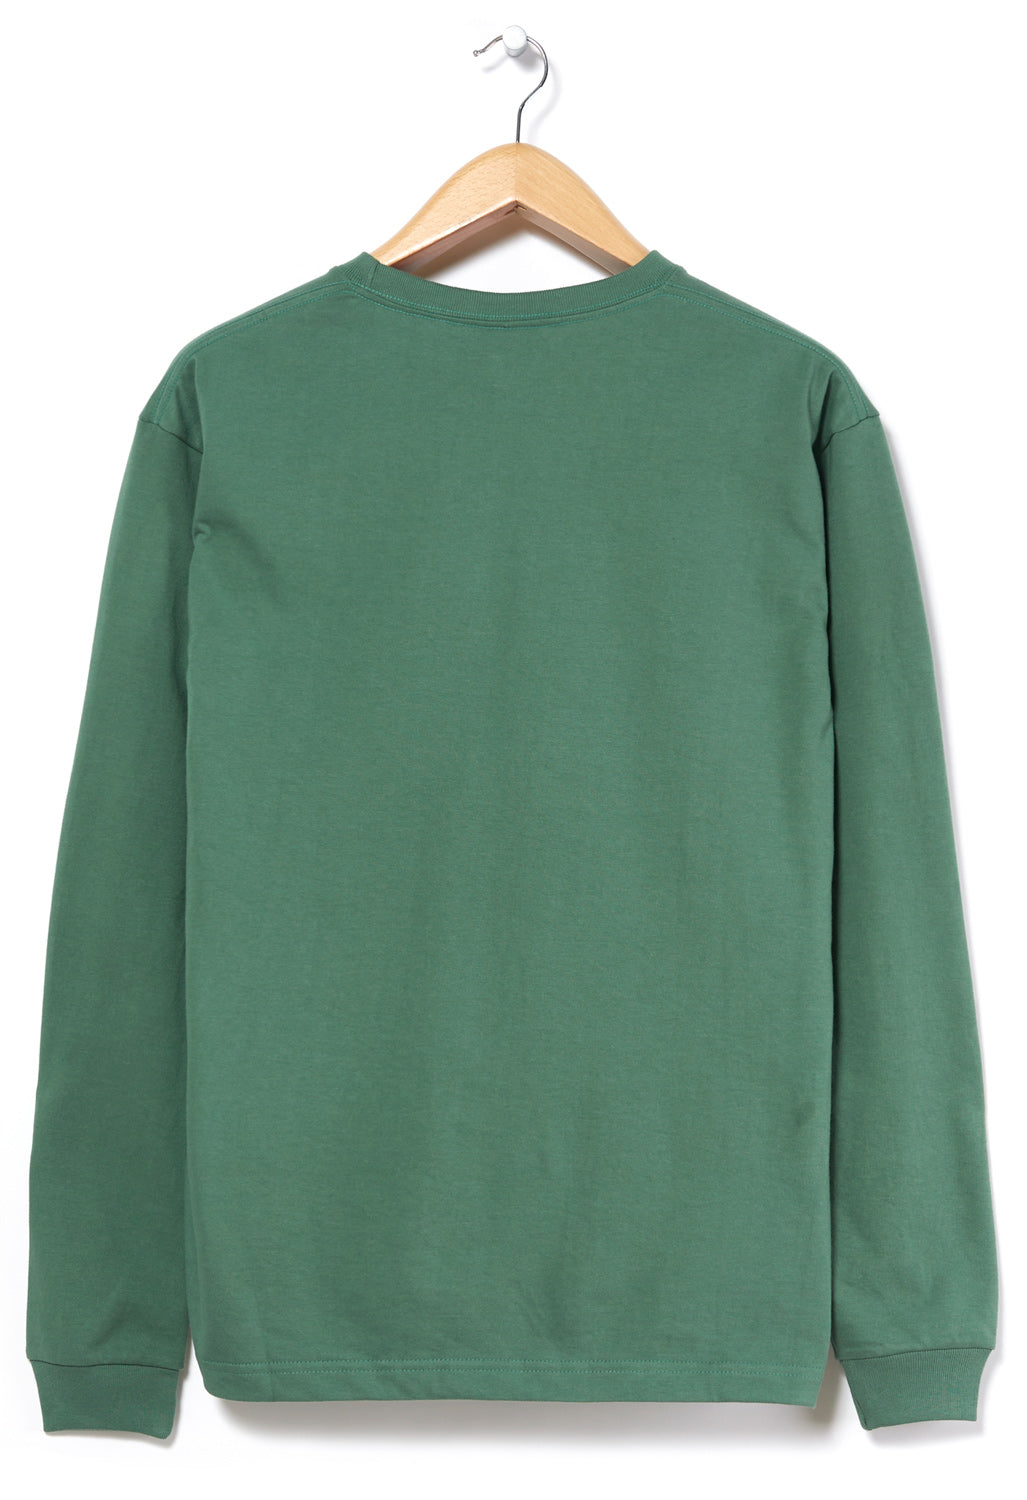 Adsum Men's Long Sleeved Pocket T-Shirt - Oakland Green